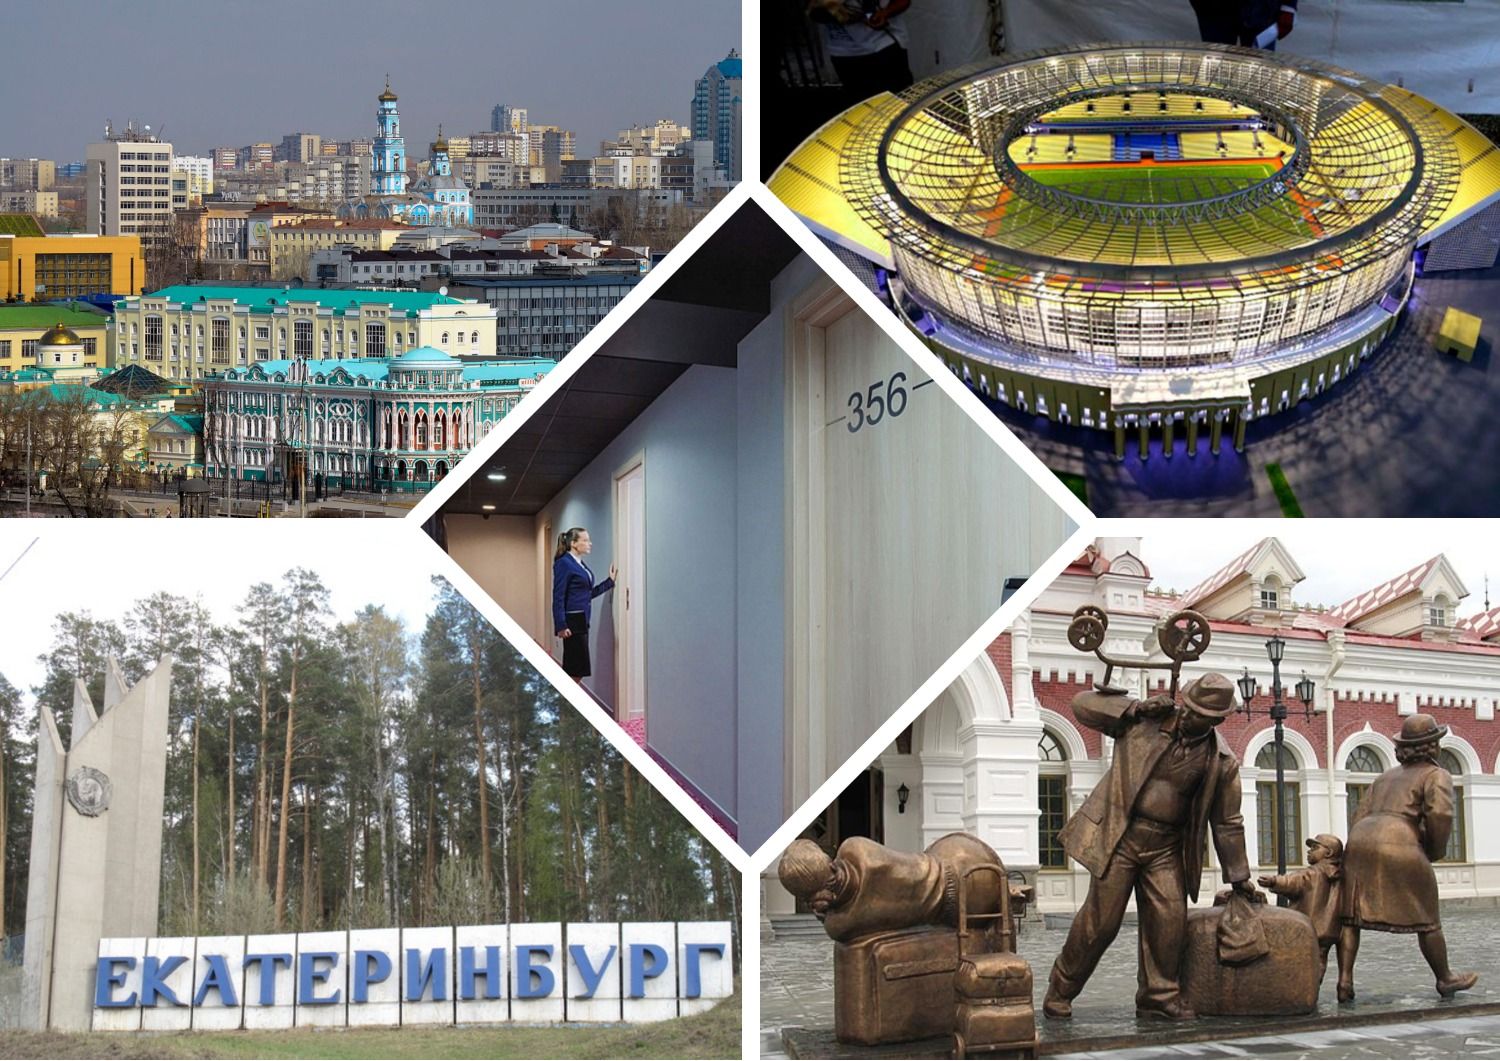 Bästa billiga hotell, hotell, vandrarhem i Jekaterinburg 2020